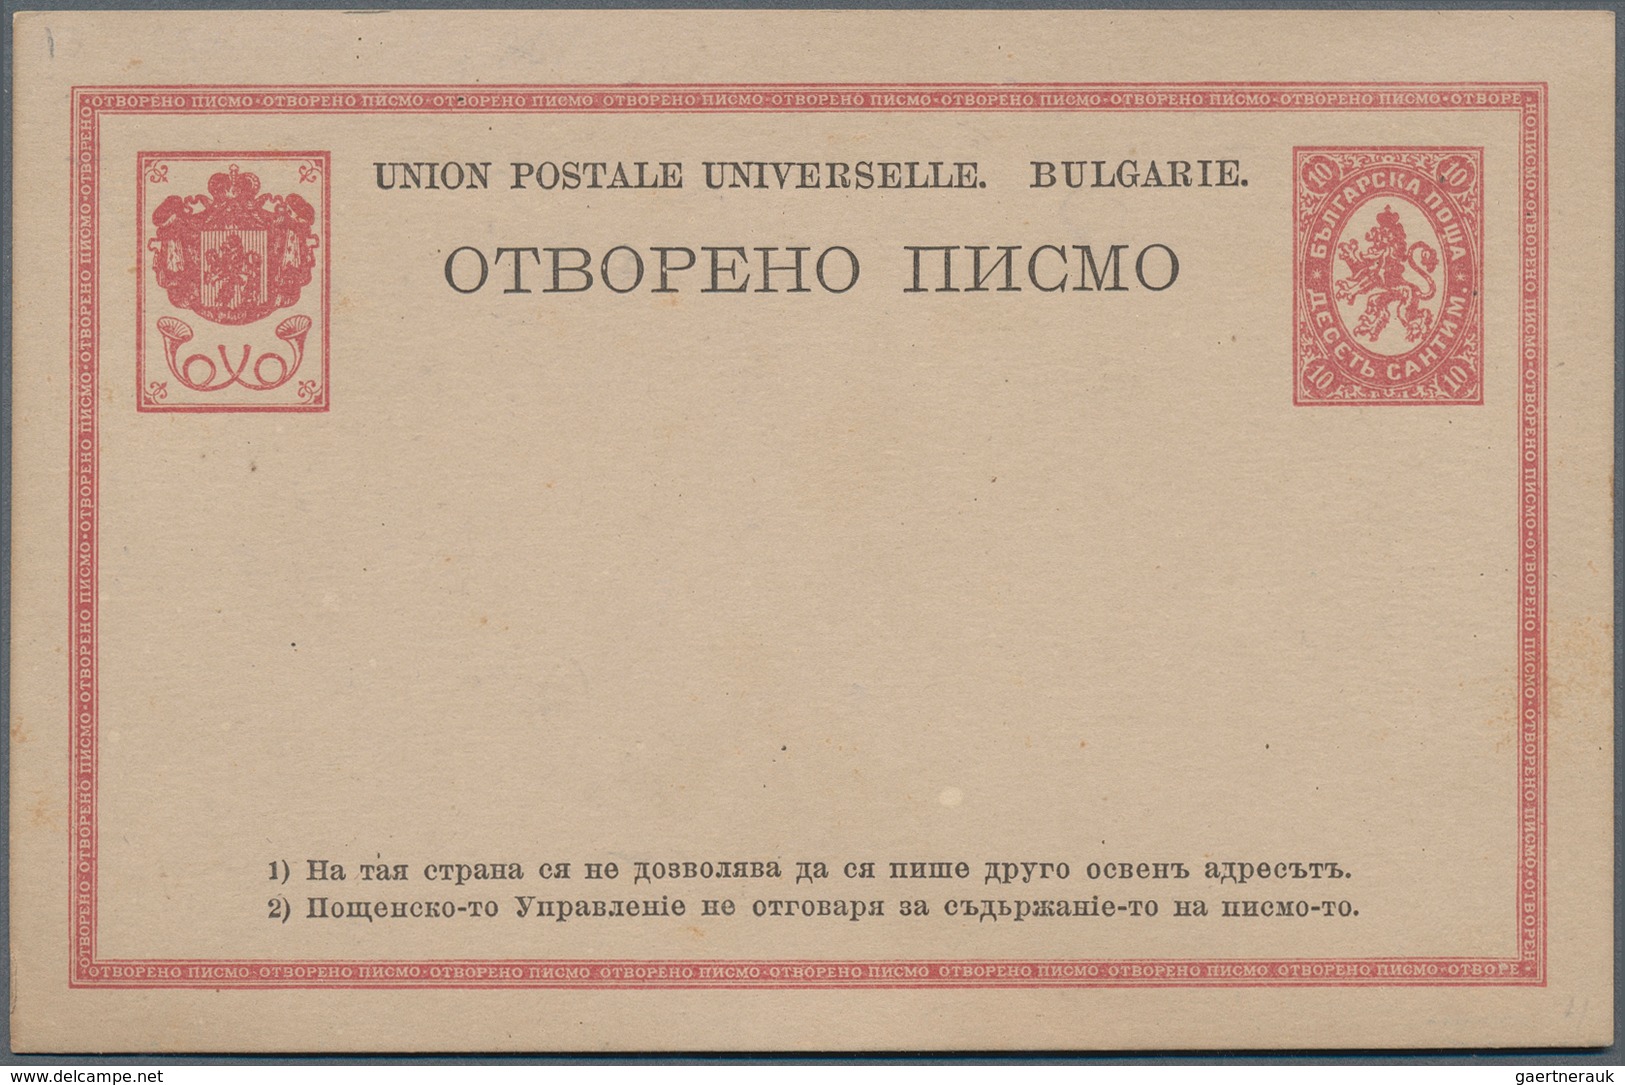 26214 Bulgarien - Ganzsachen: 1879/1938 (ca.), Bestand von ca. 135 ungebrauchten und gebrauchten Ganzsache